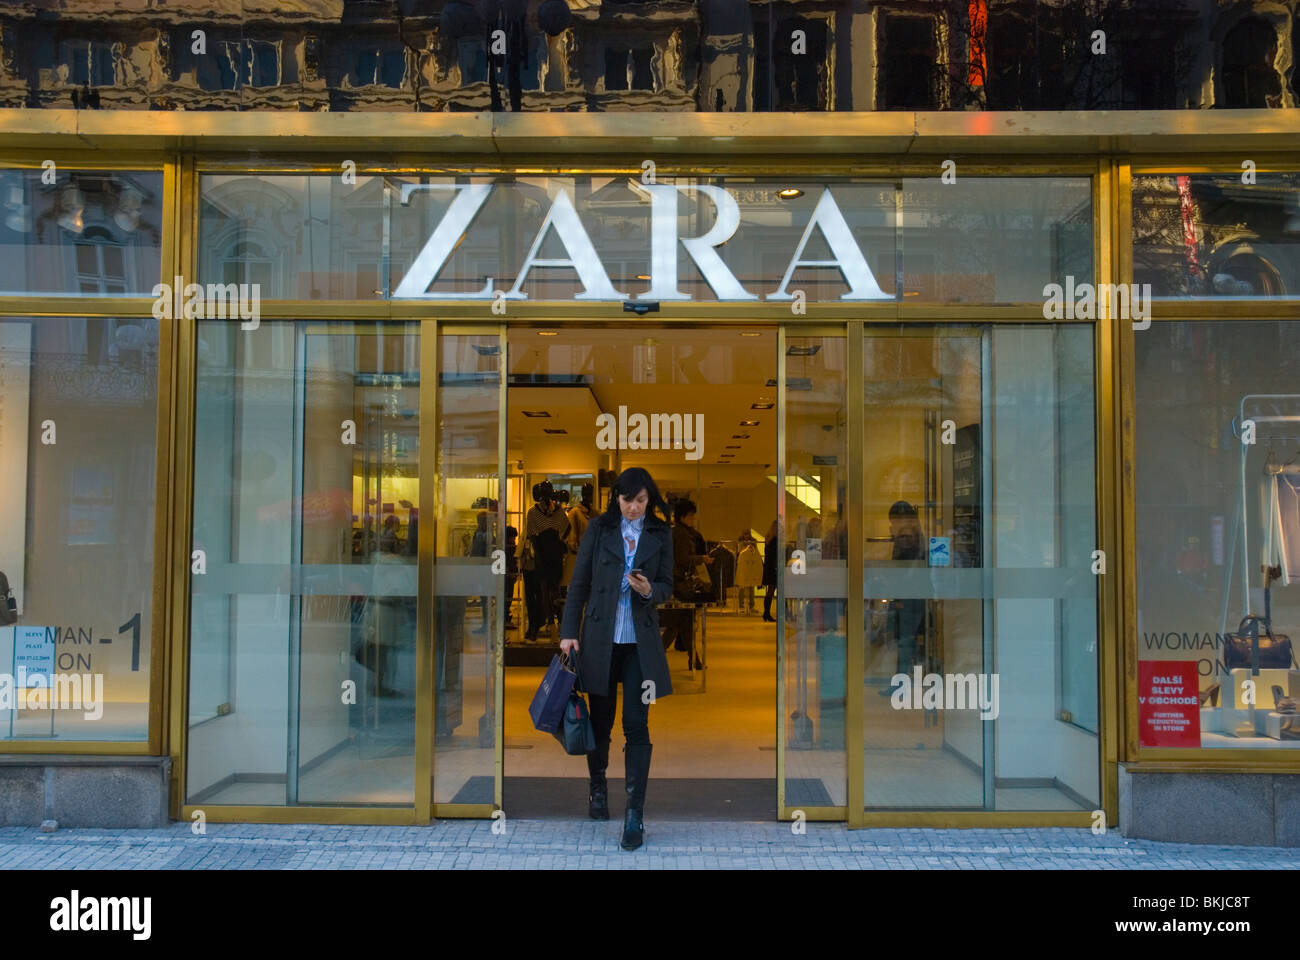 Zara Kleidung einkaufen Na Prikope Prag Tschechien Mitteleuropa  Stockfotografie - Alamy